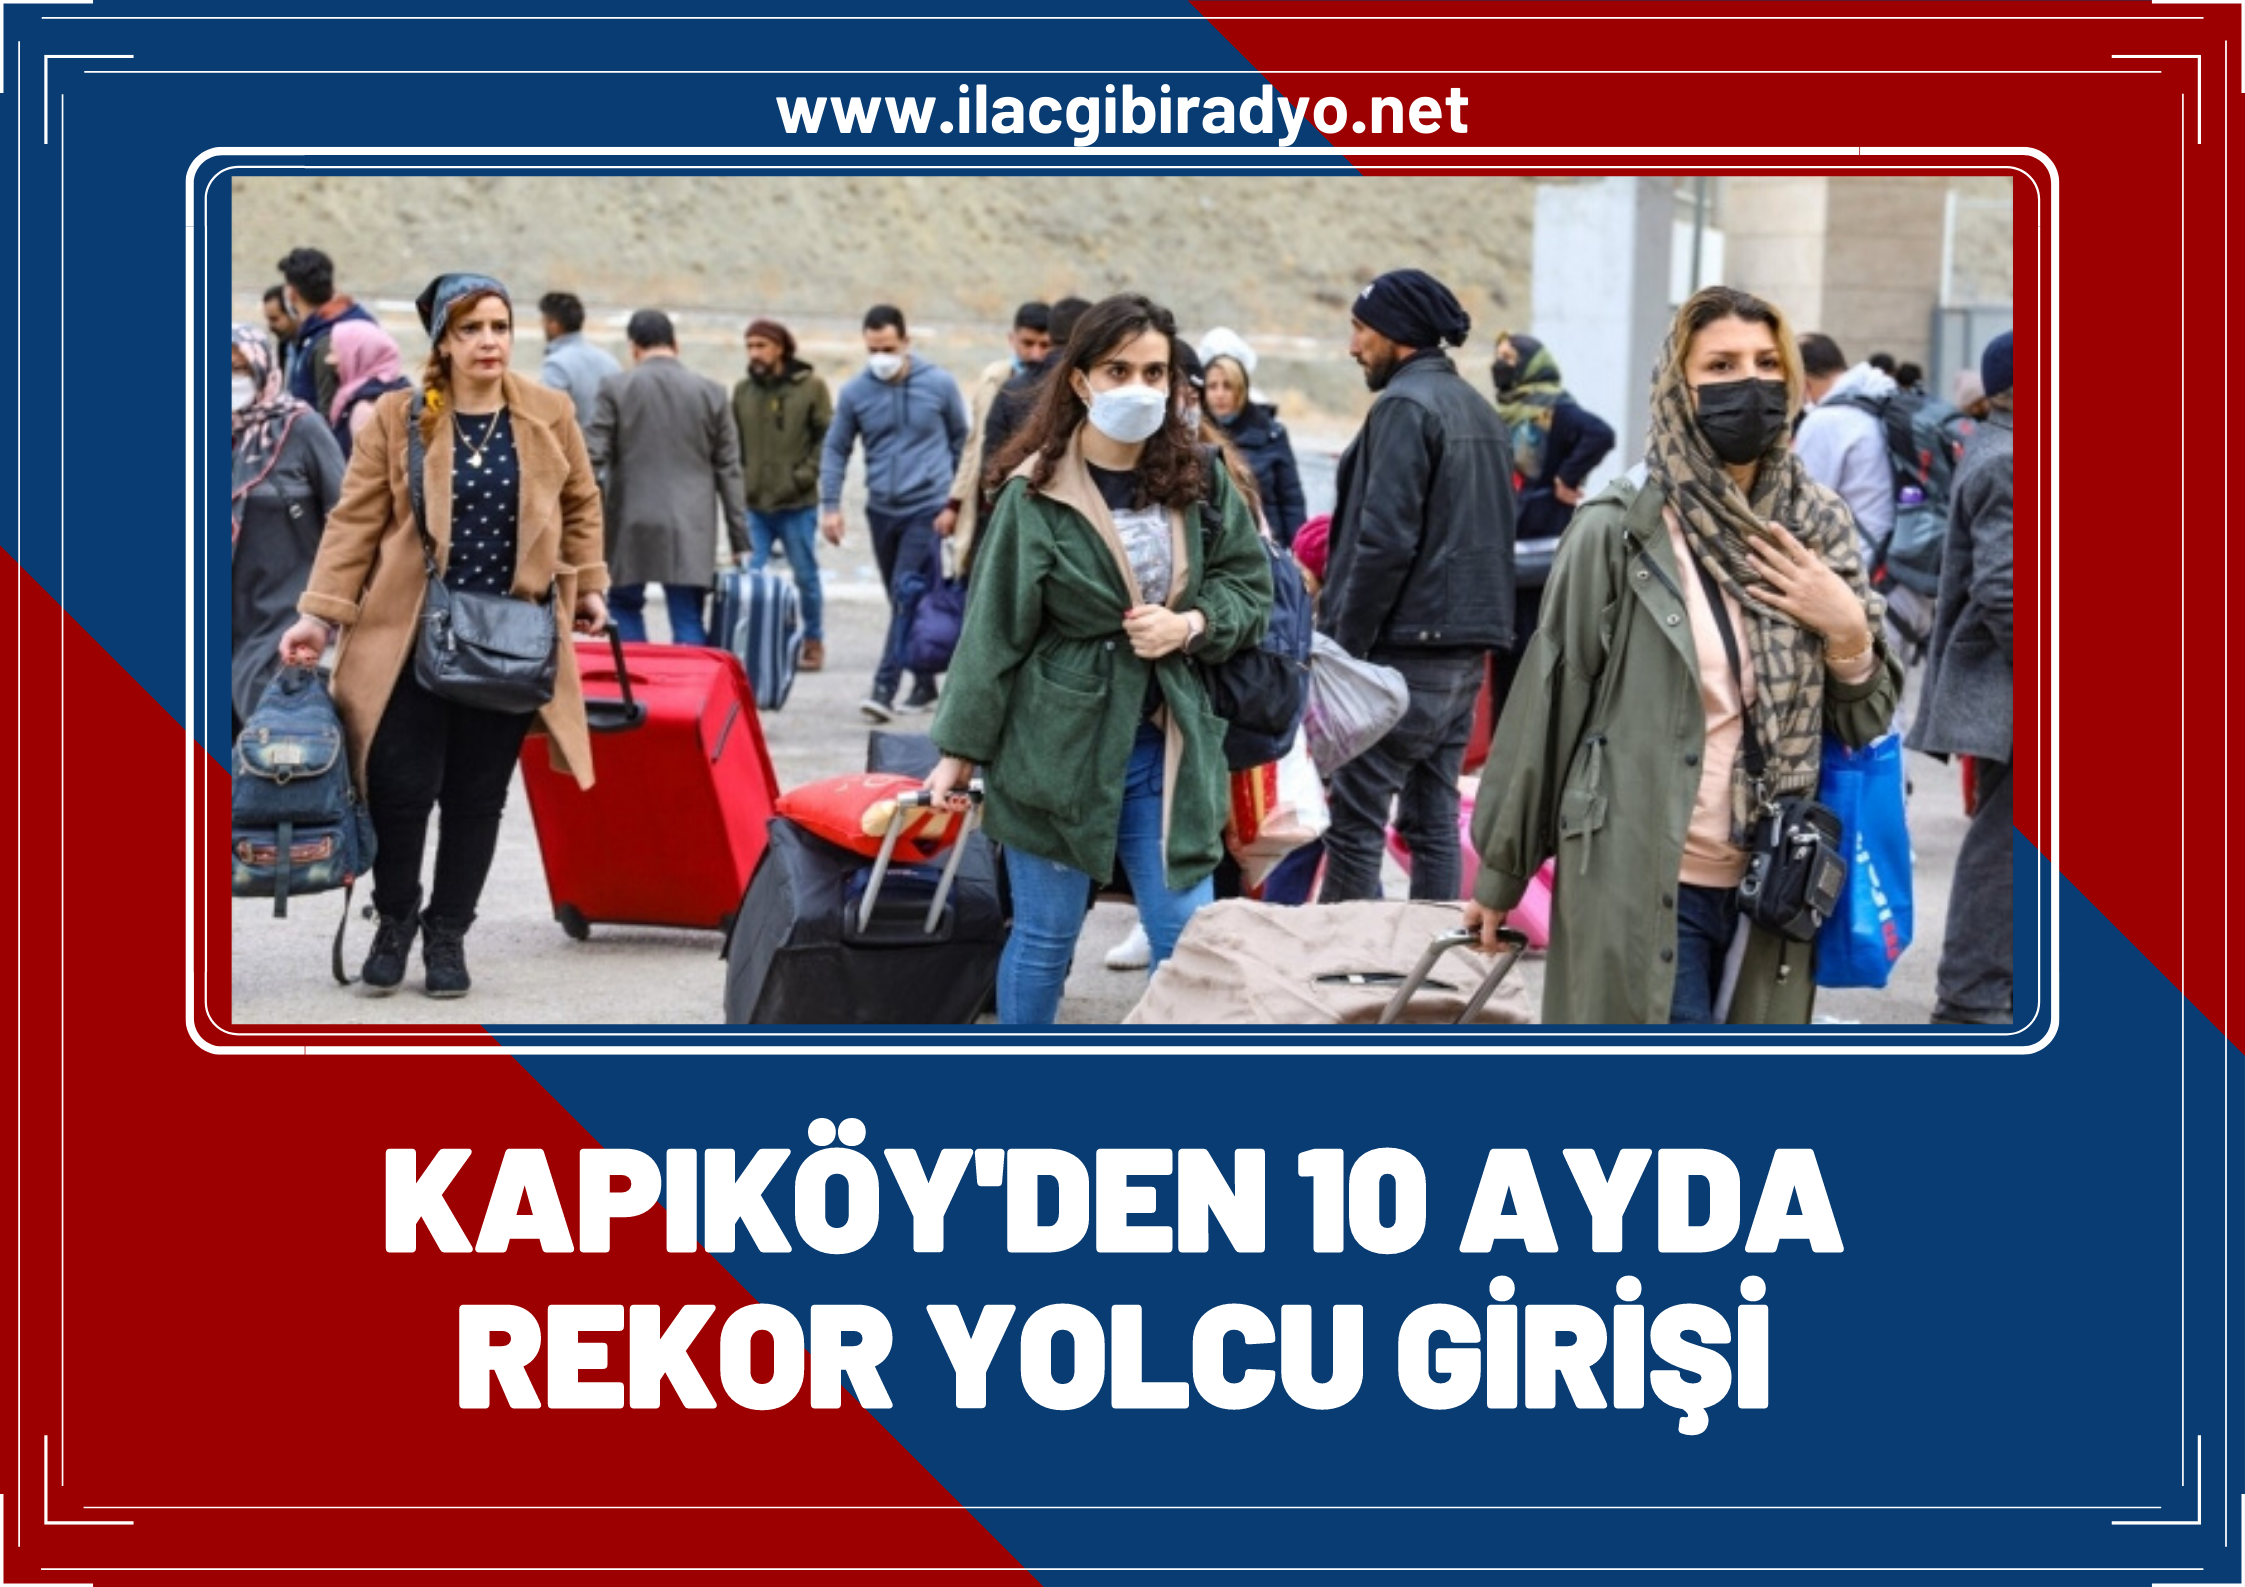 Van’daki Kapıköy’den rekor sayıda yolcu geçişi!